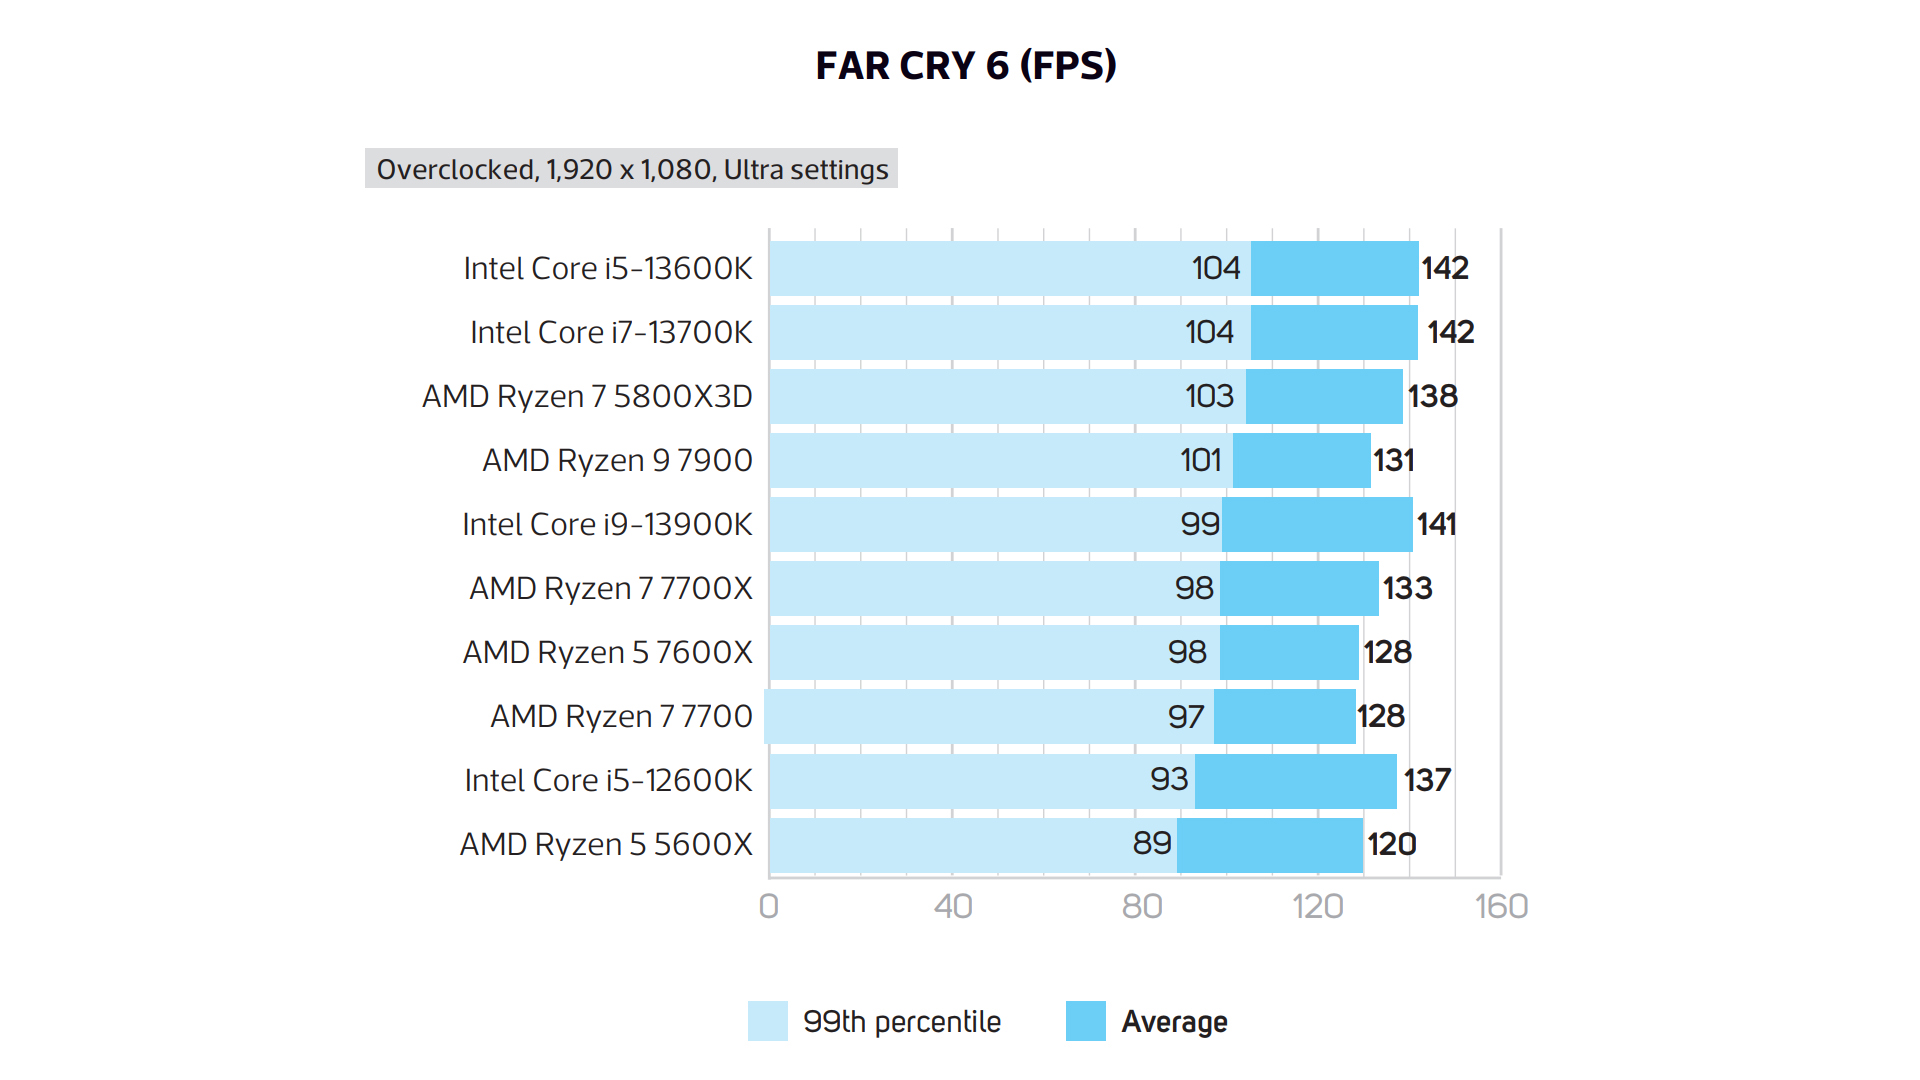  Intel Core i7-13700K Gaming Desktop Processor 16 cores